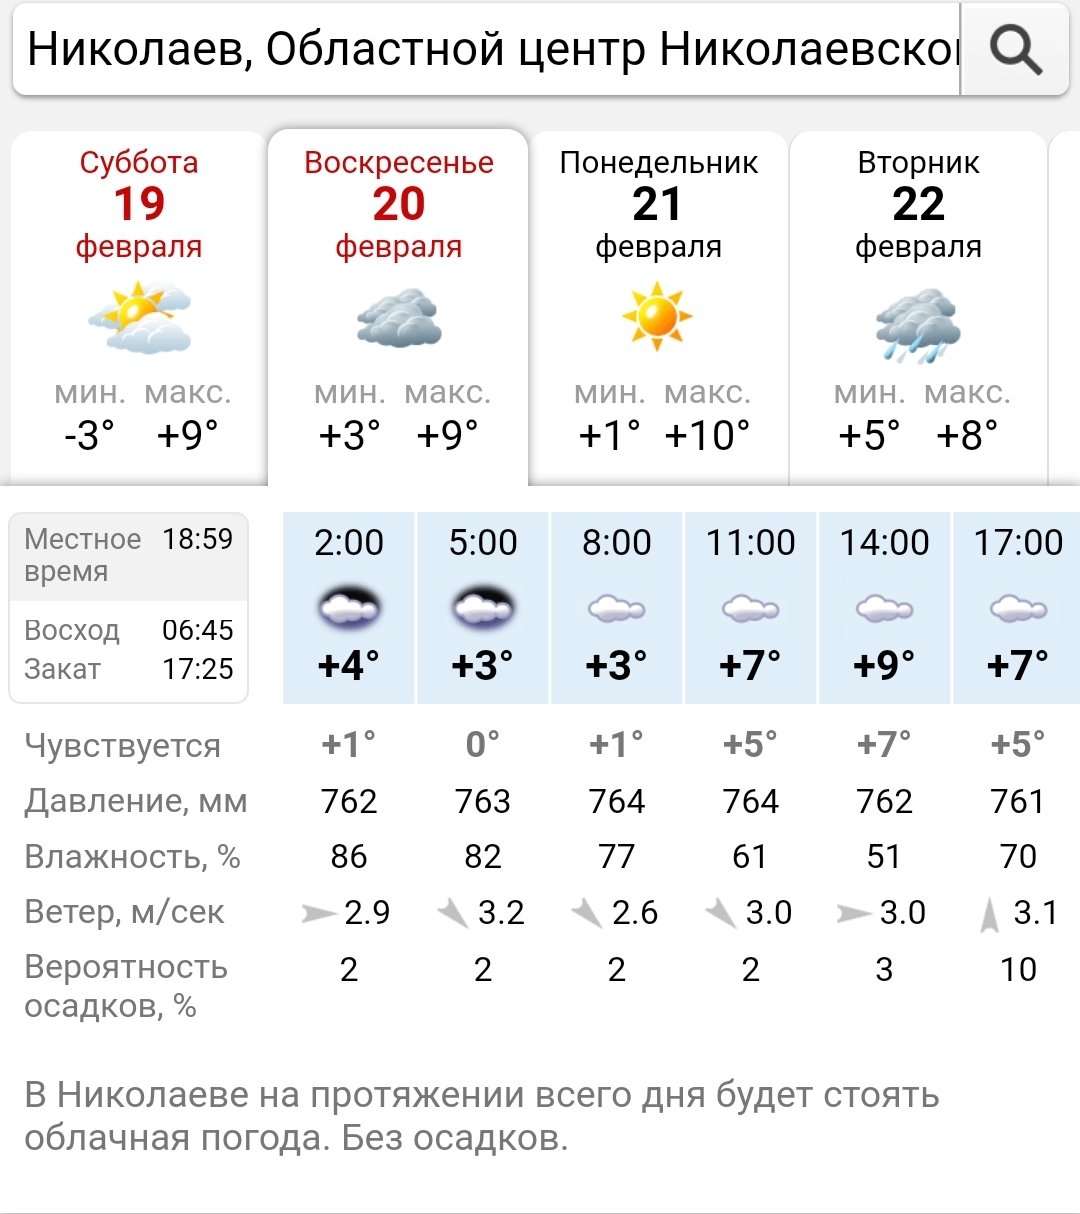 Николаевцев ожидает теплый день, - ФОТО